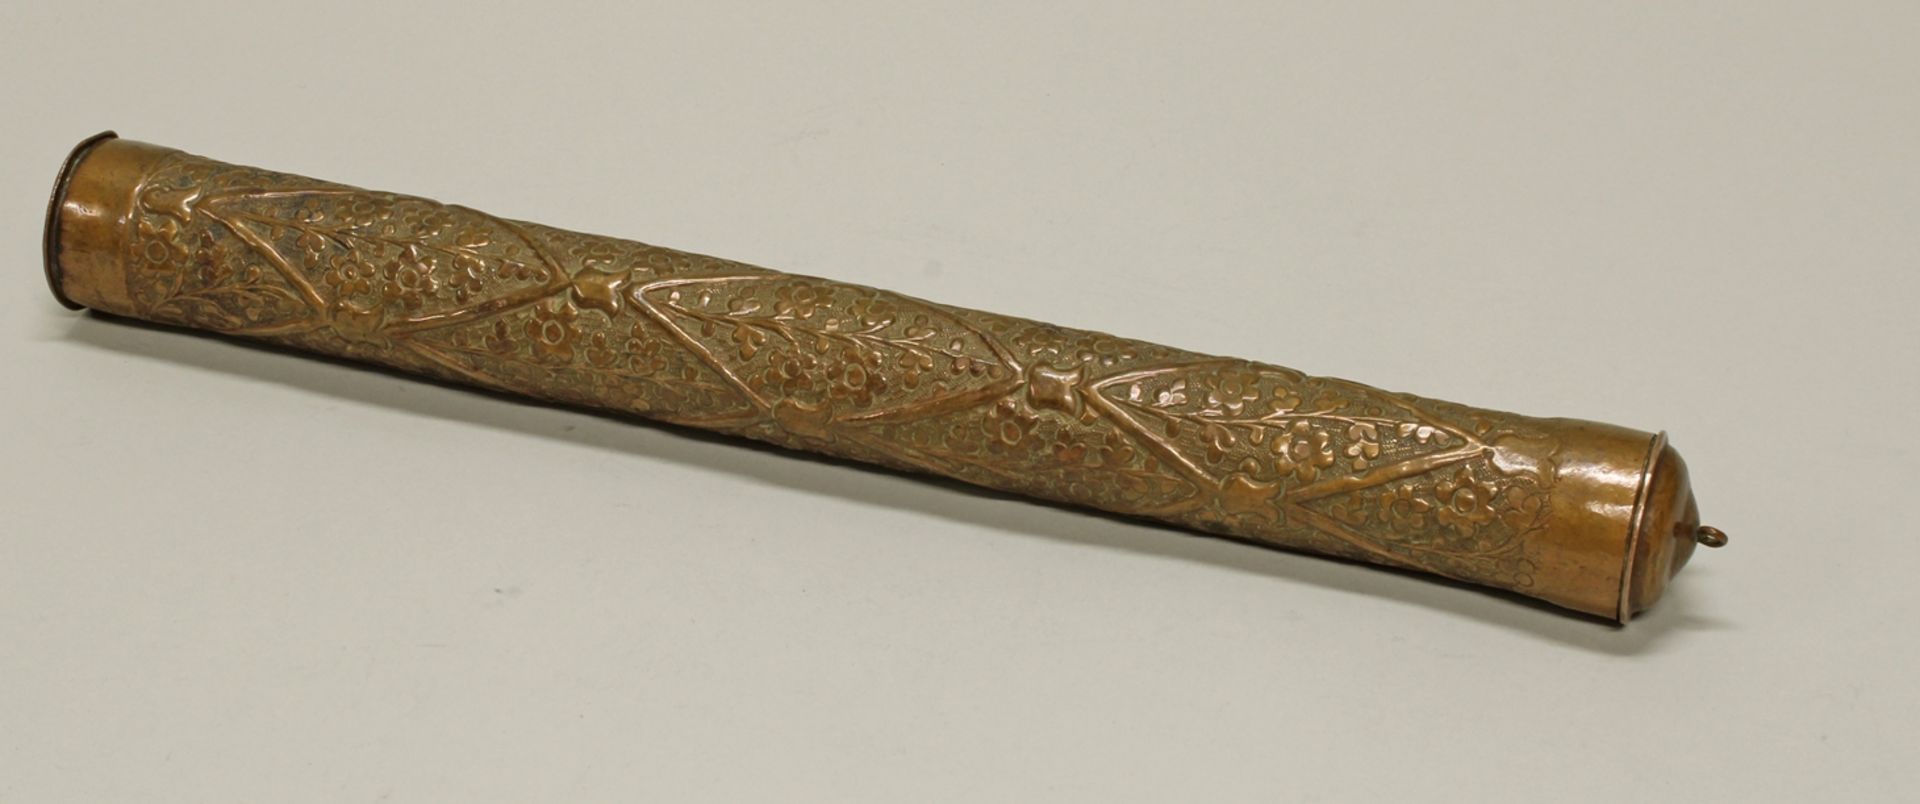 Dokumentenrolle, Orient, 20. Jh., Kupfer, zylindrisch, floral verziert, 40 cm hoch, Bodendeckel ged